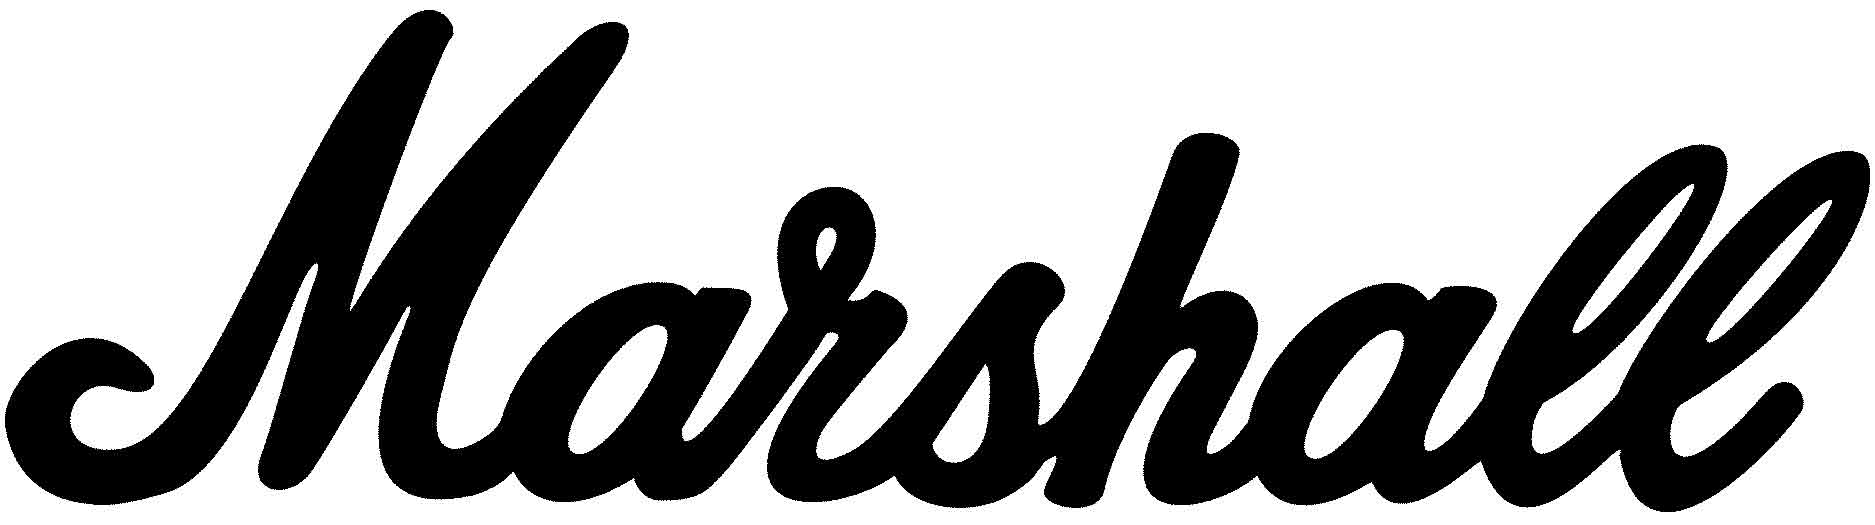 Masrhall Logo - Marshall Logos